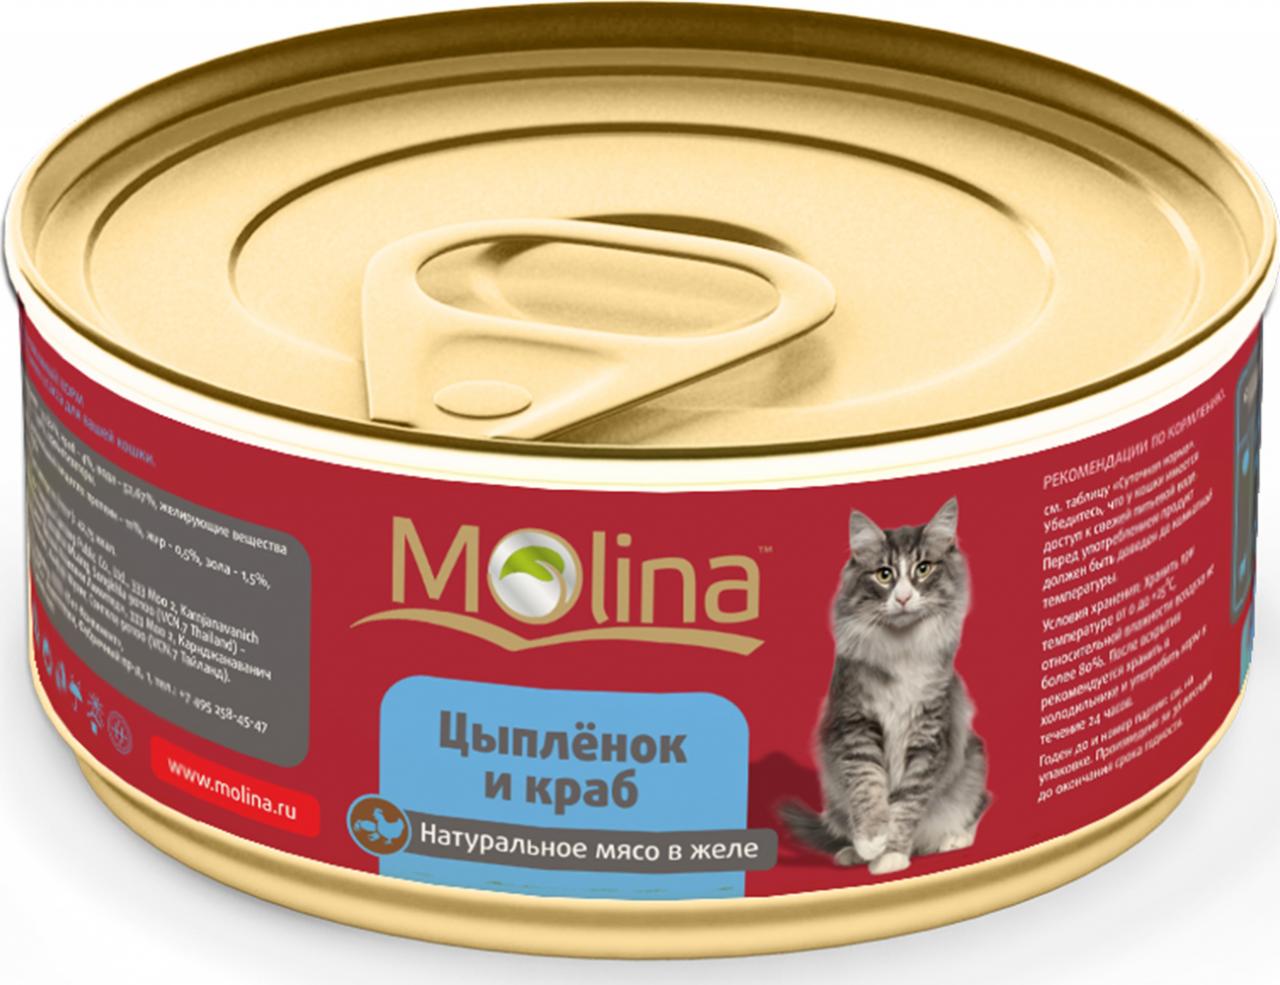 MOLINA консервы для кошек "Цыпленок с крабами" 80г